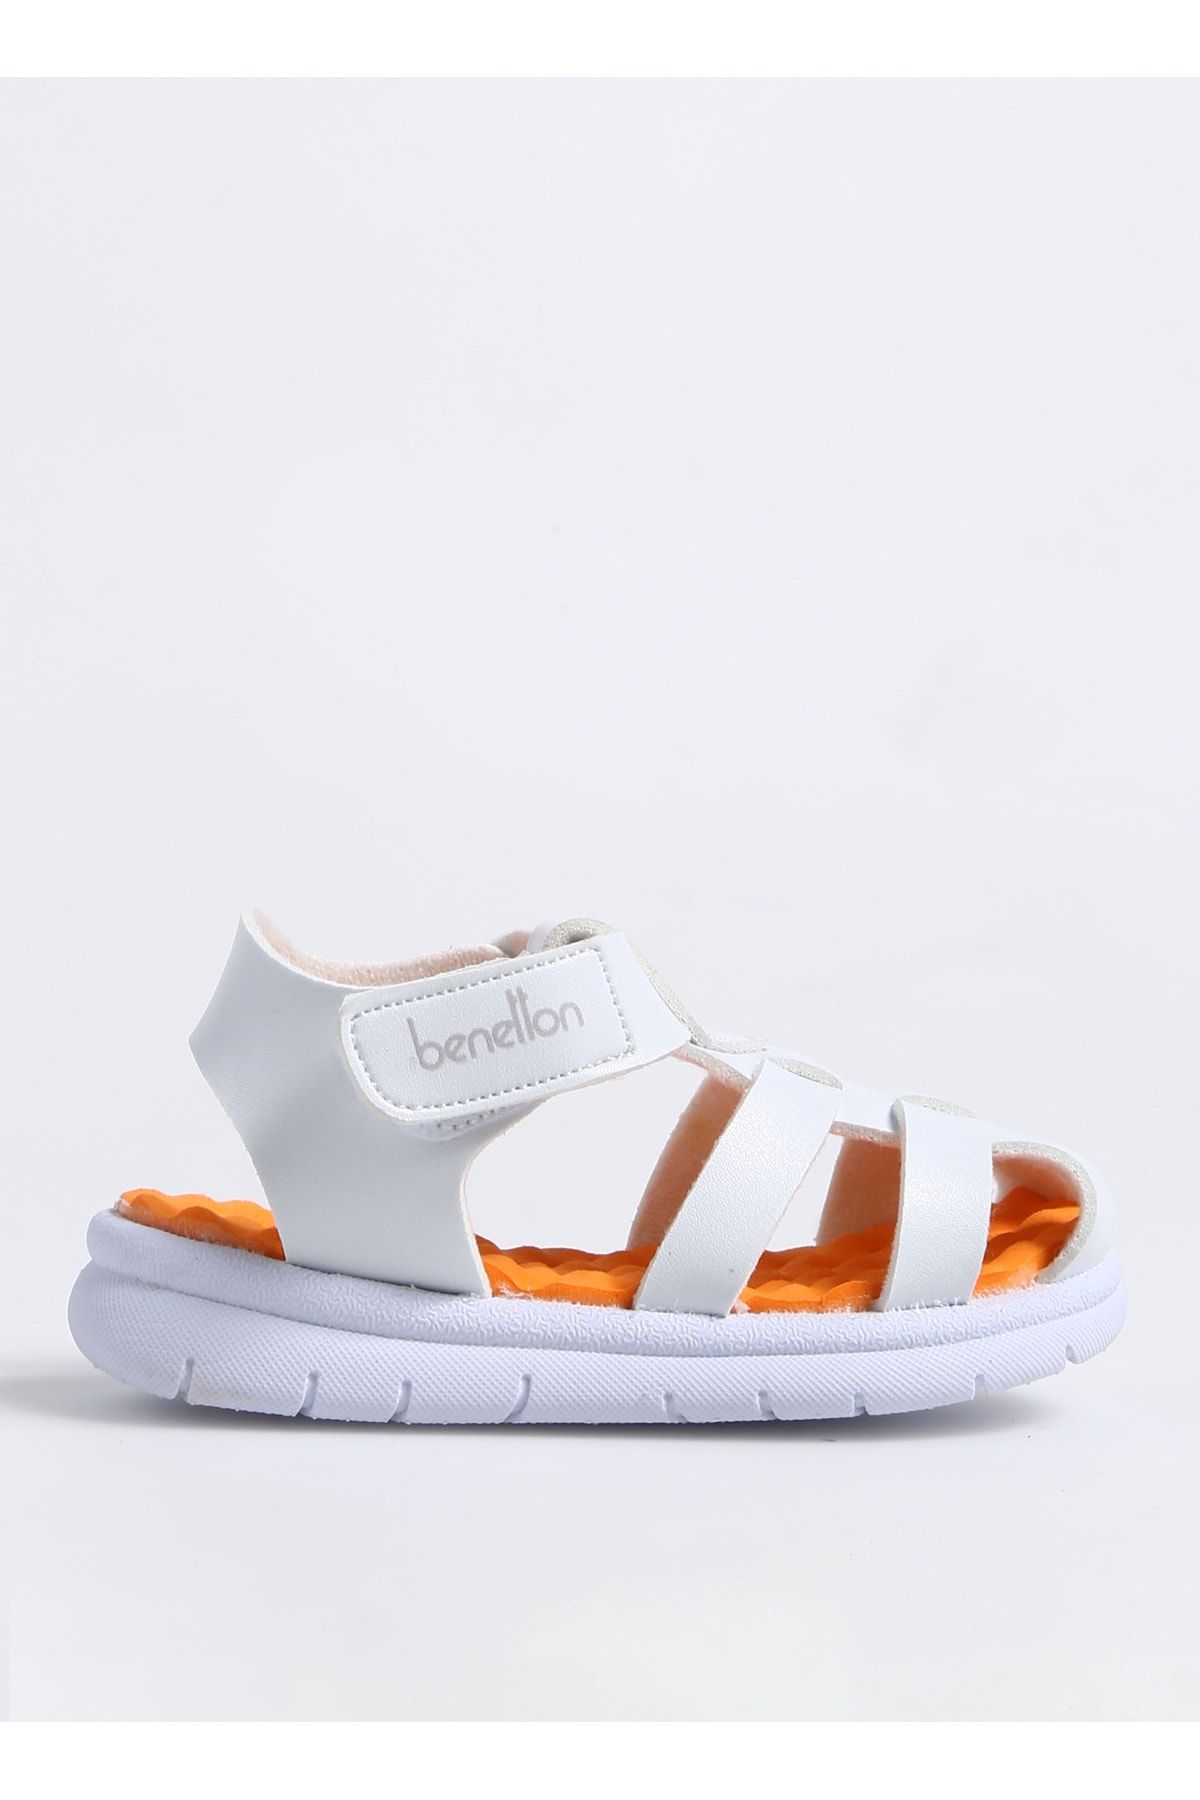 Benetton Beyaz - Turuncu Bebek Yürüyüş Ayakkabısı BN-1245